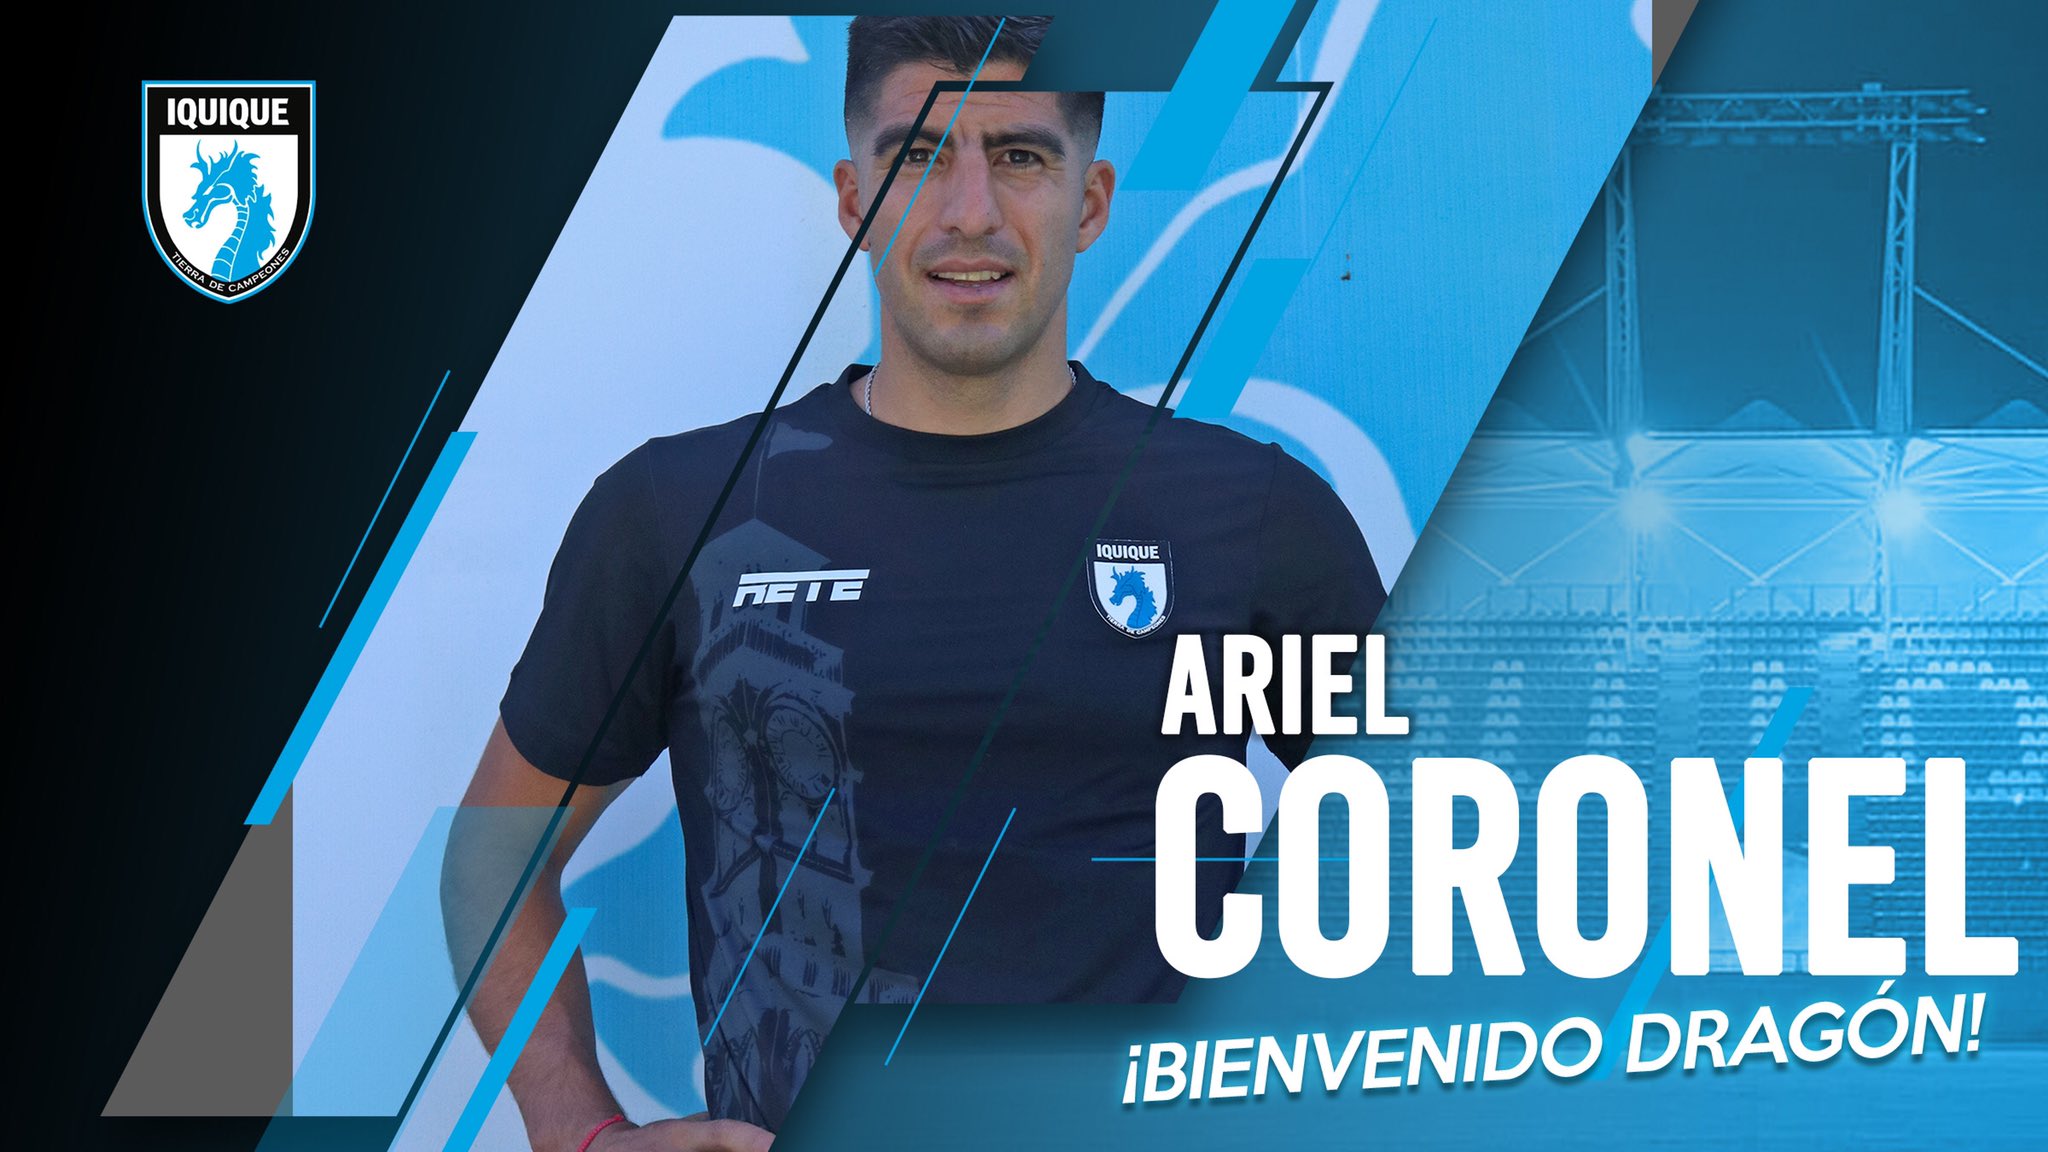 ¿Quién es Ariel Coronel?